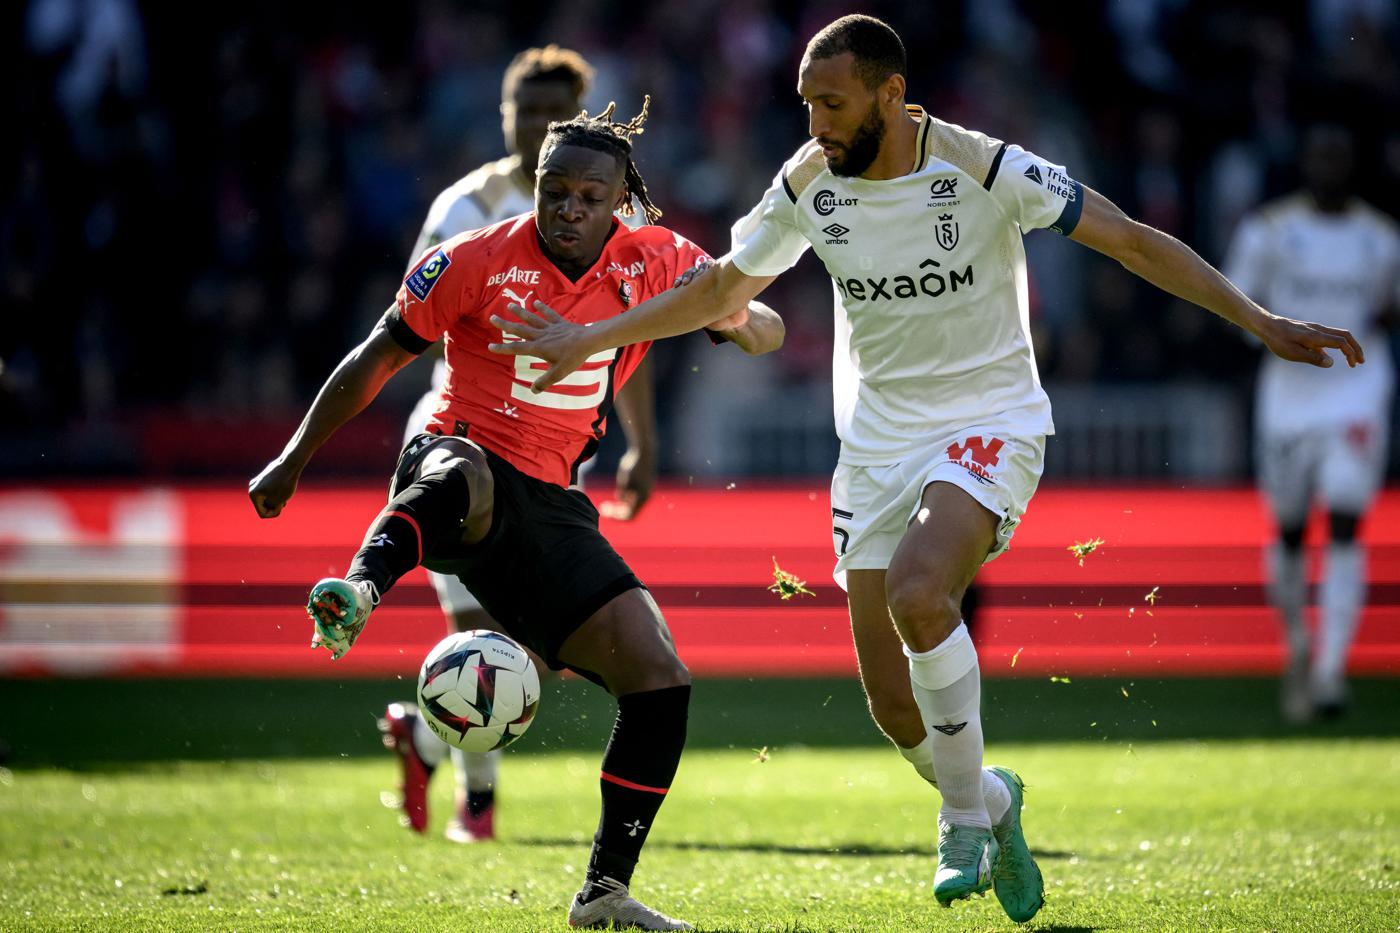 Rennes - Reims - 3:0. Französische Meisterschaft, 31. Runde. Spielbericht, Statistiken